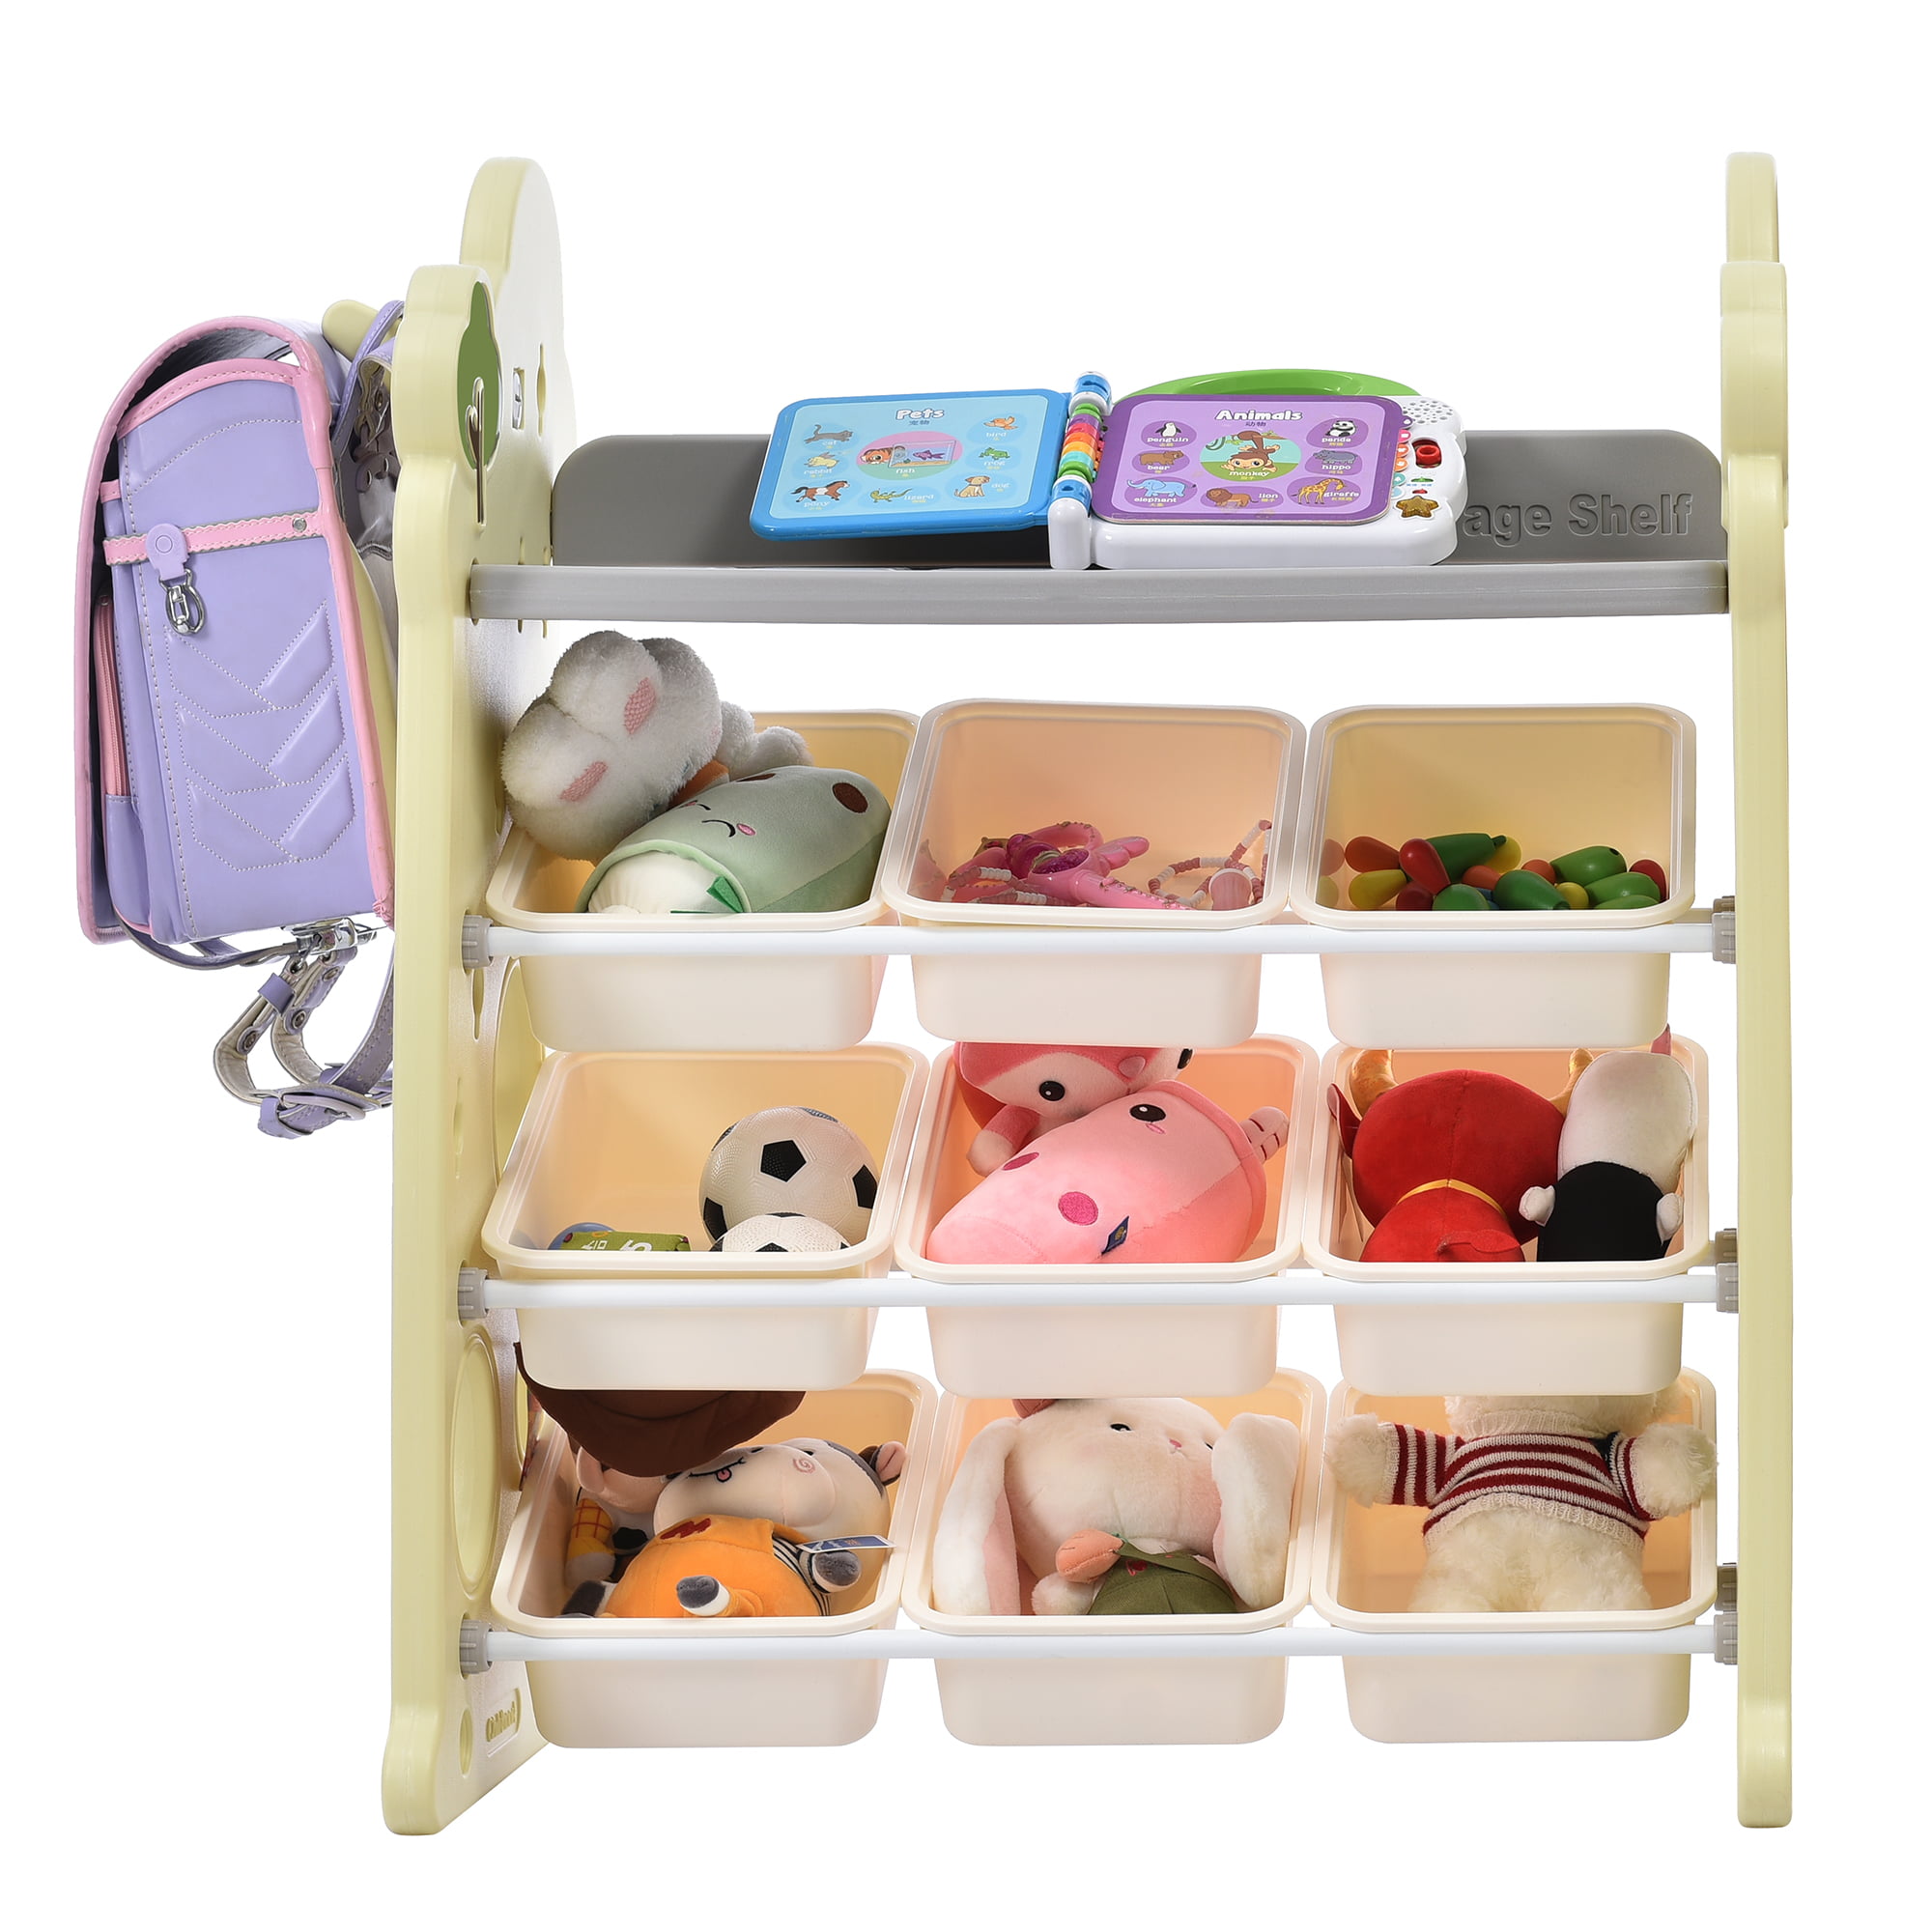 Kids Toy Storage Organizer with 9 Bins